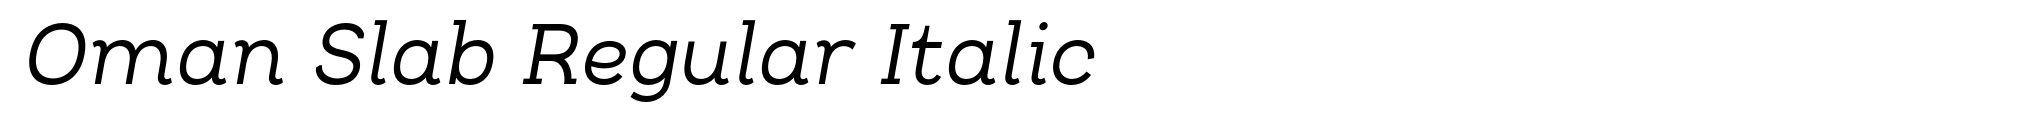 Oman Slab Regular Italic image